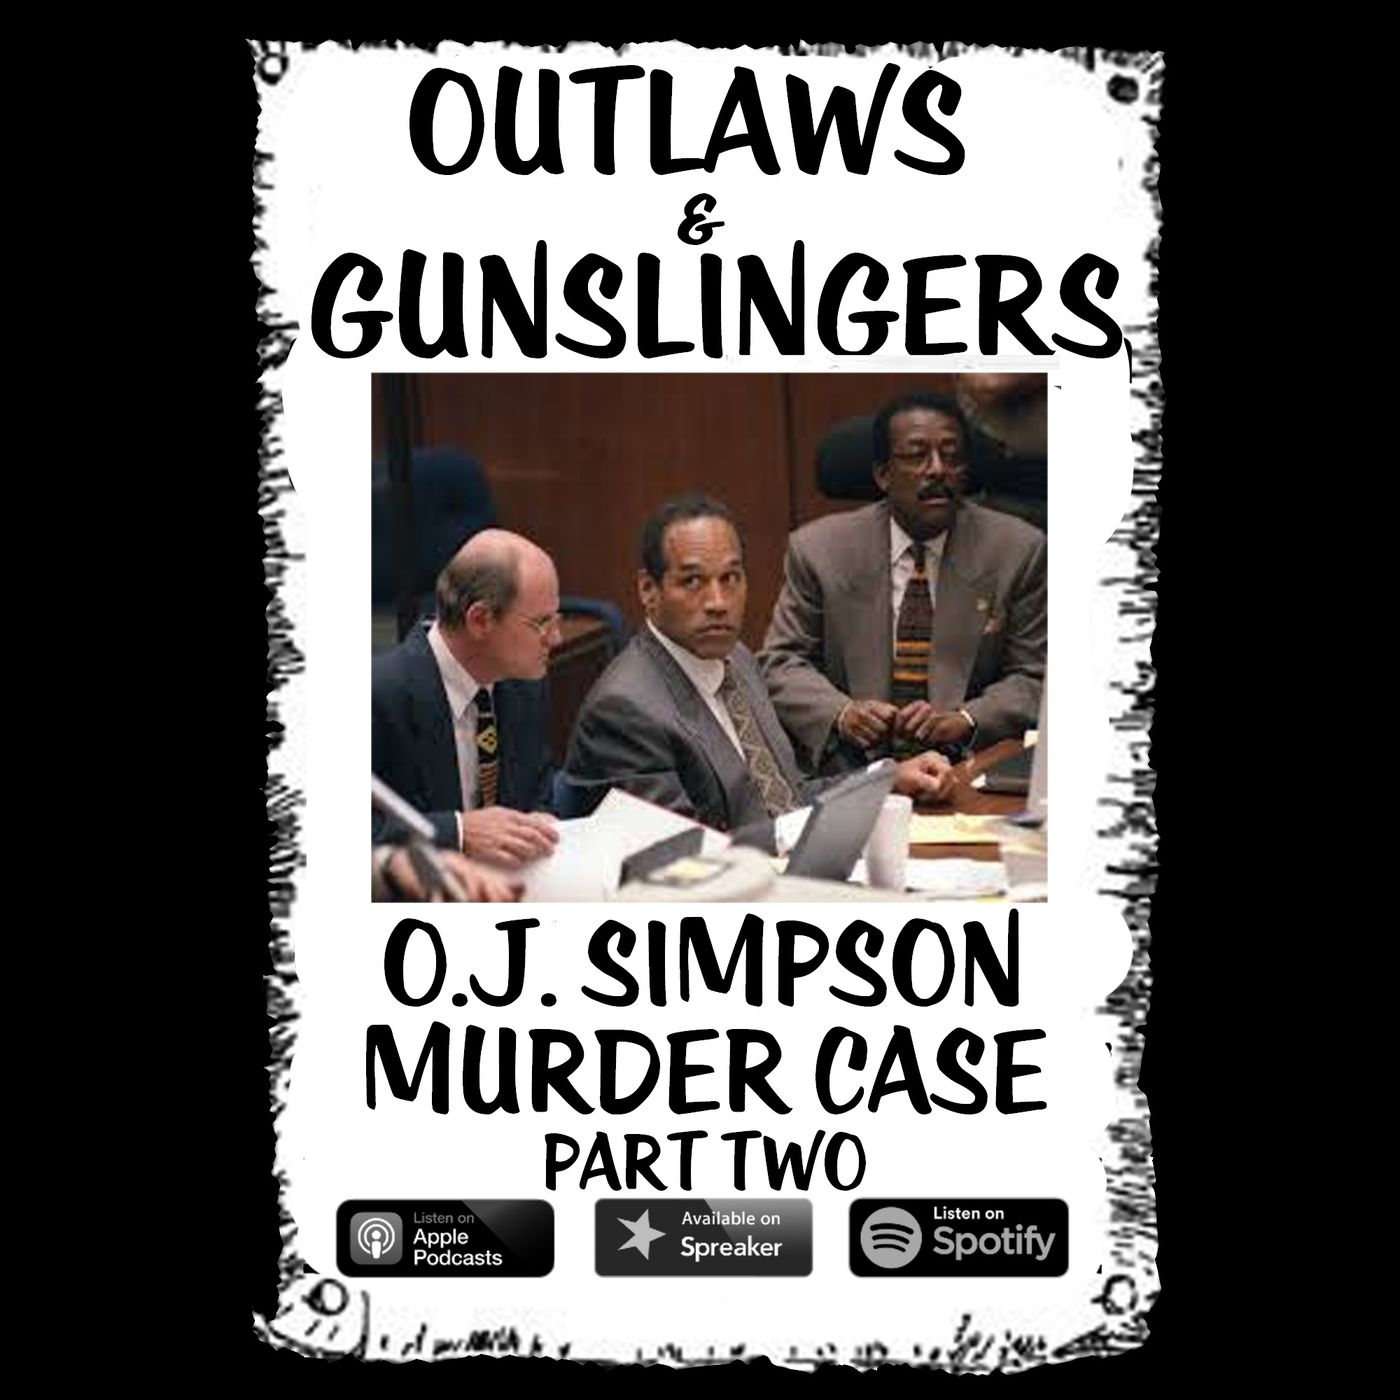 OJ Simpson Murder Case Part 2